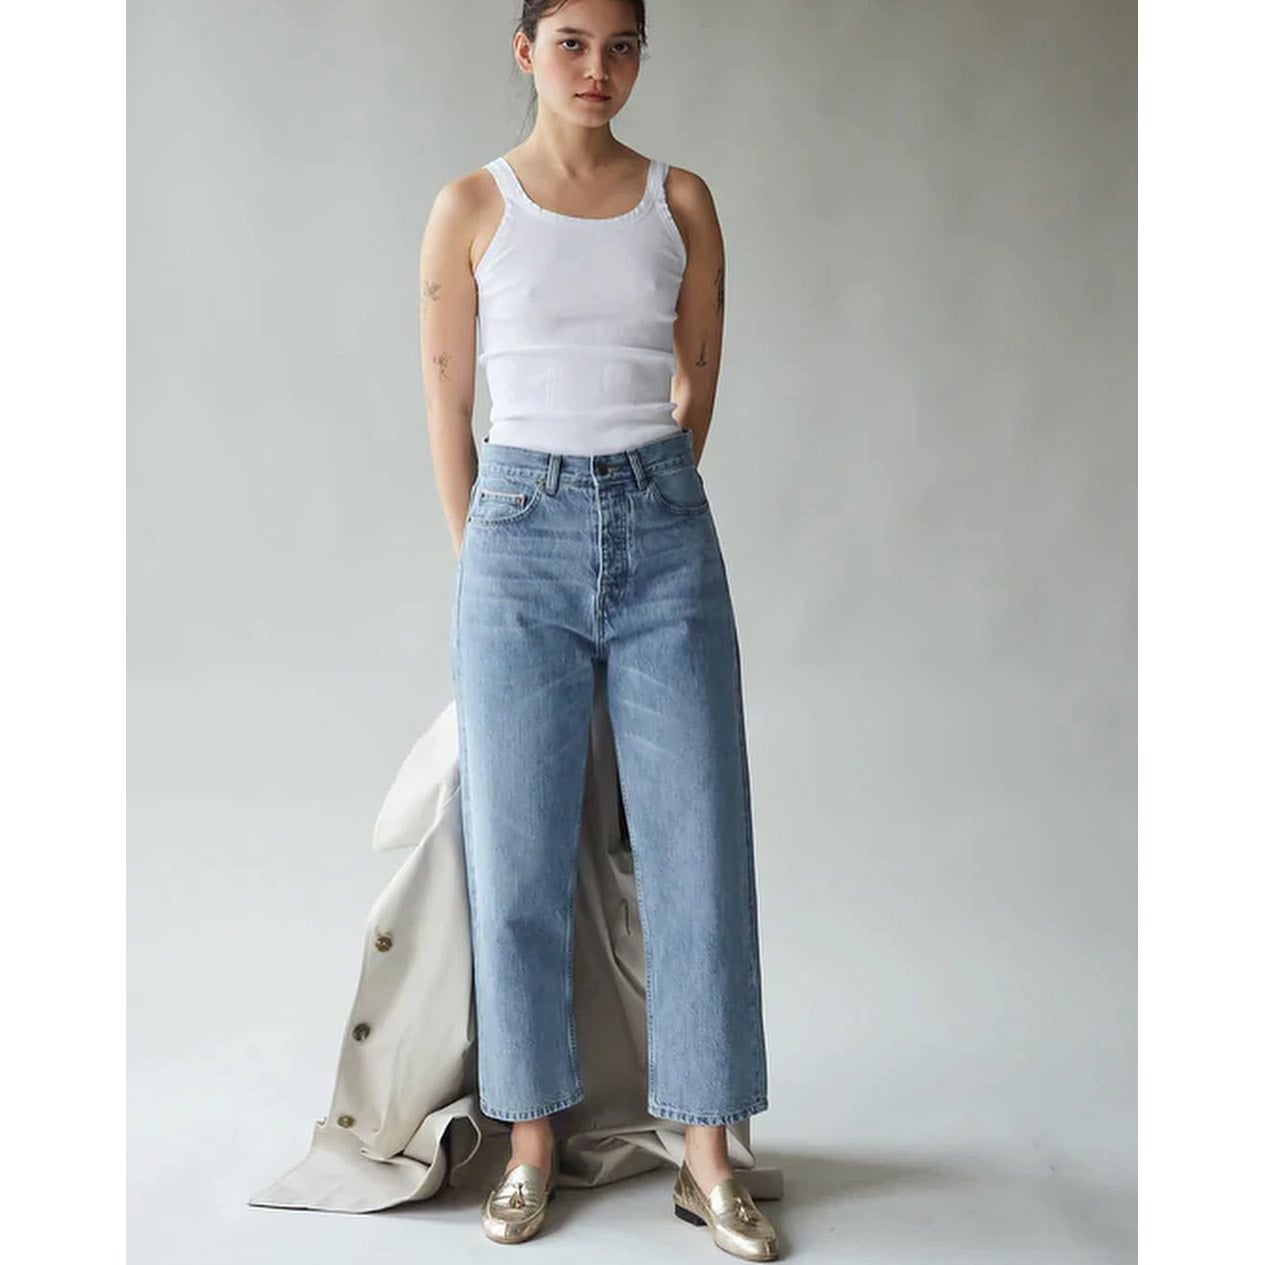 Jeans & Pants | The Sequel Sale